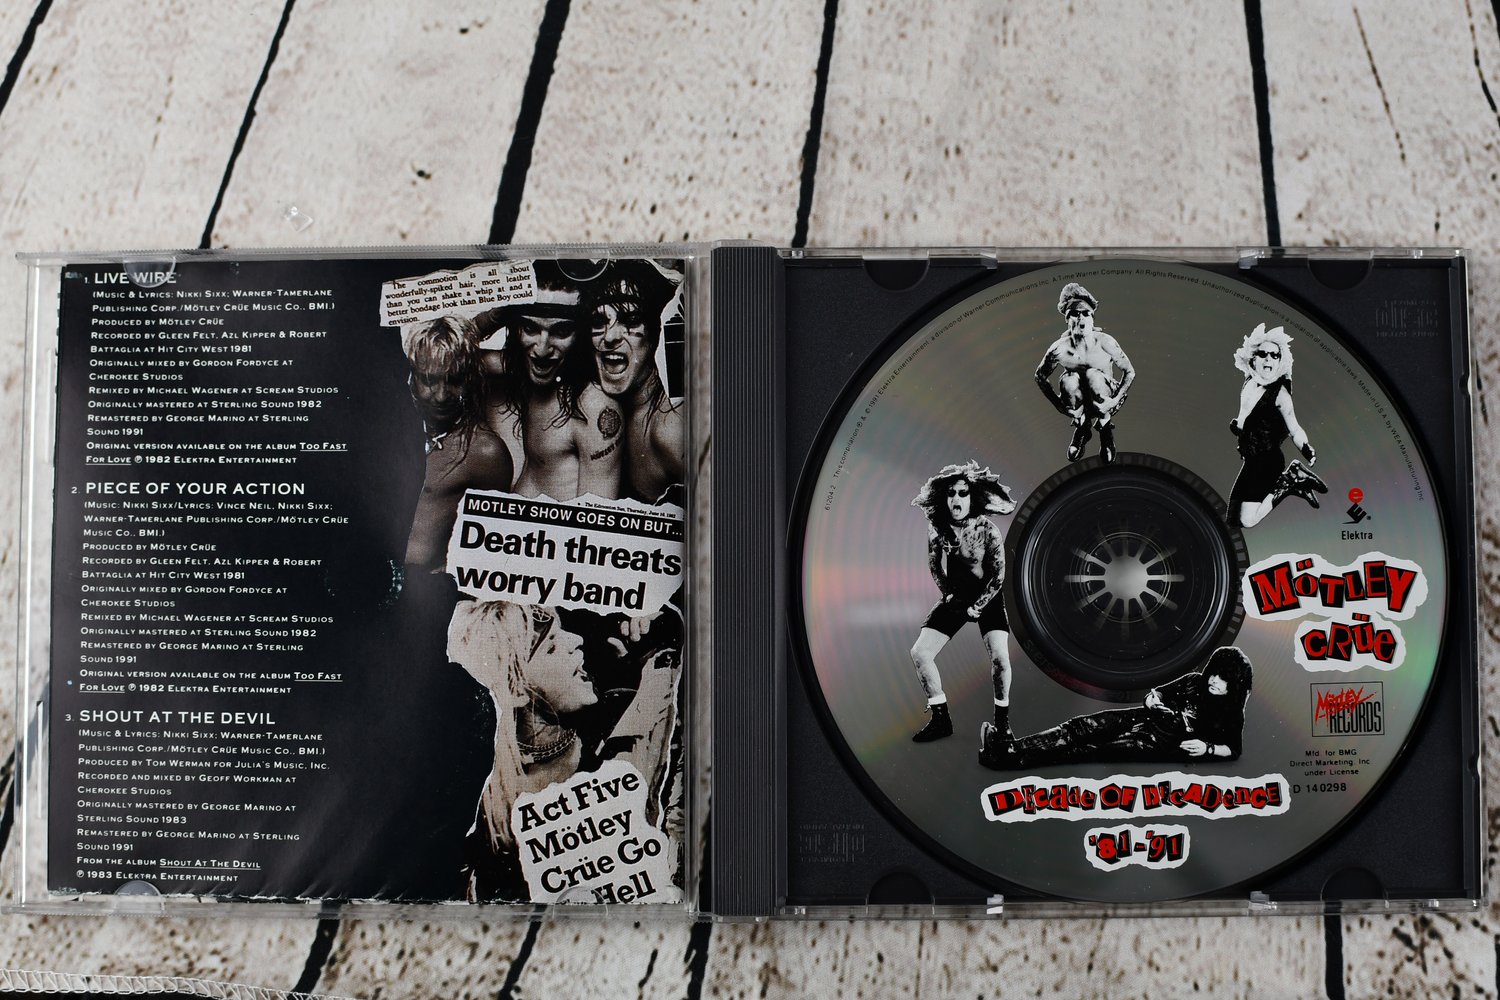 Mötley Crüe – Live Wire Lyrics